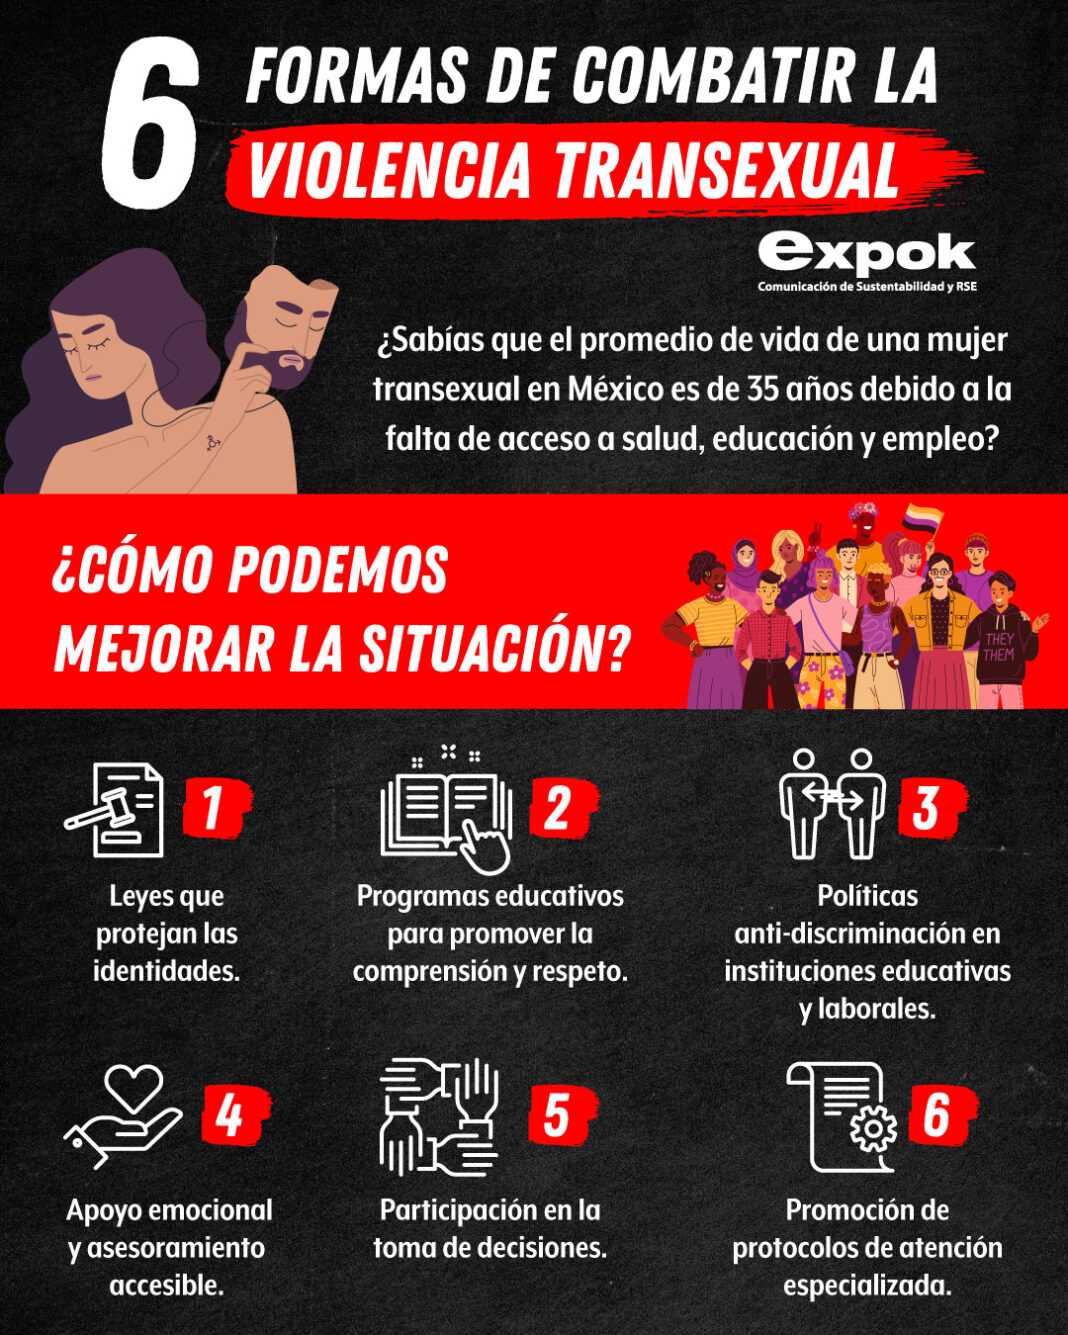 6 Formas de combatir la violencia transexual